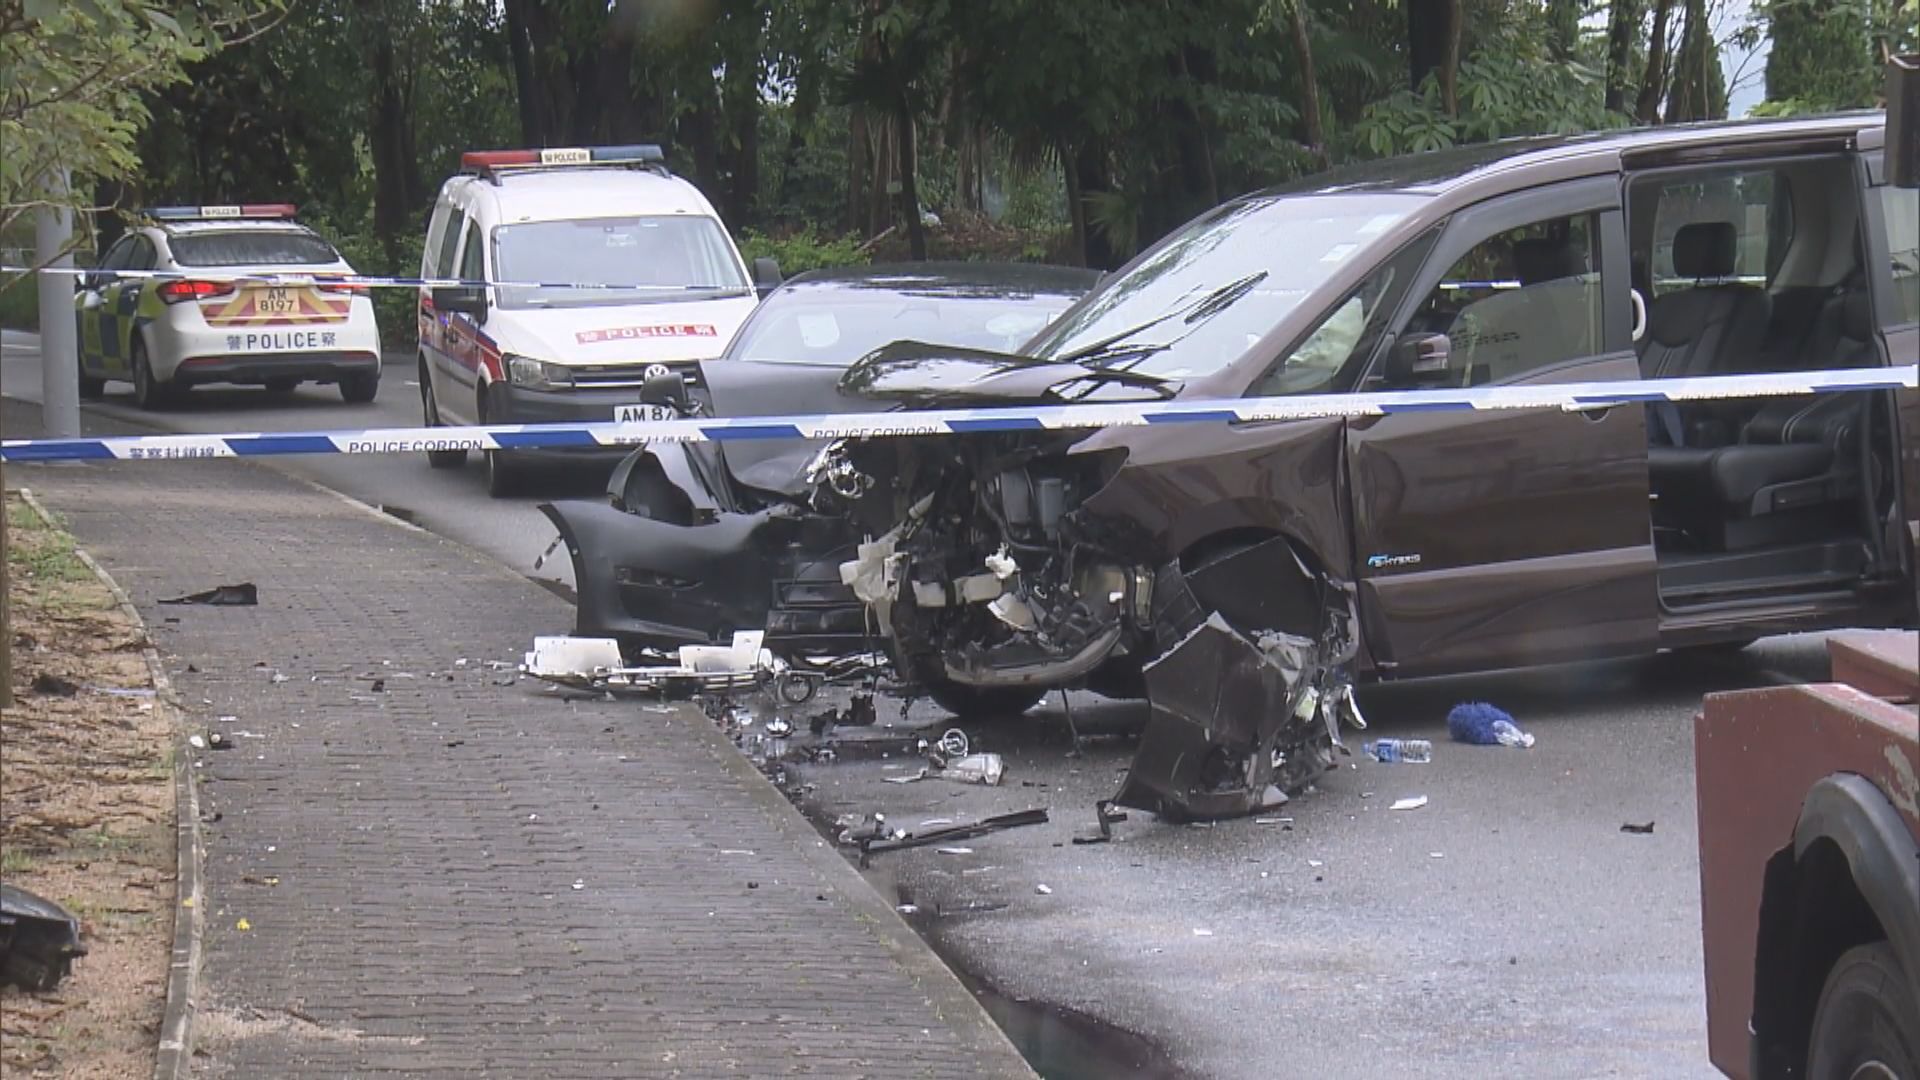 大埔三門仔路兩輛私家車相撞 一死五傷 七人車司機涉危駕致他人死亡被捕